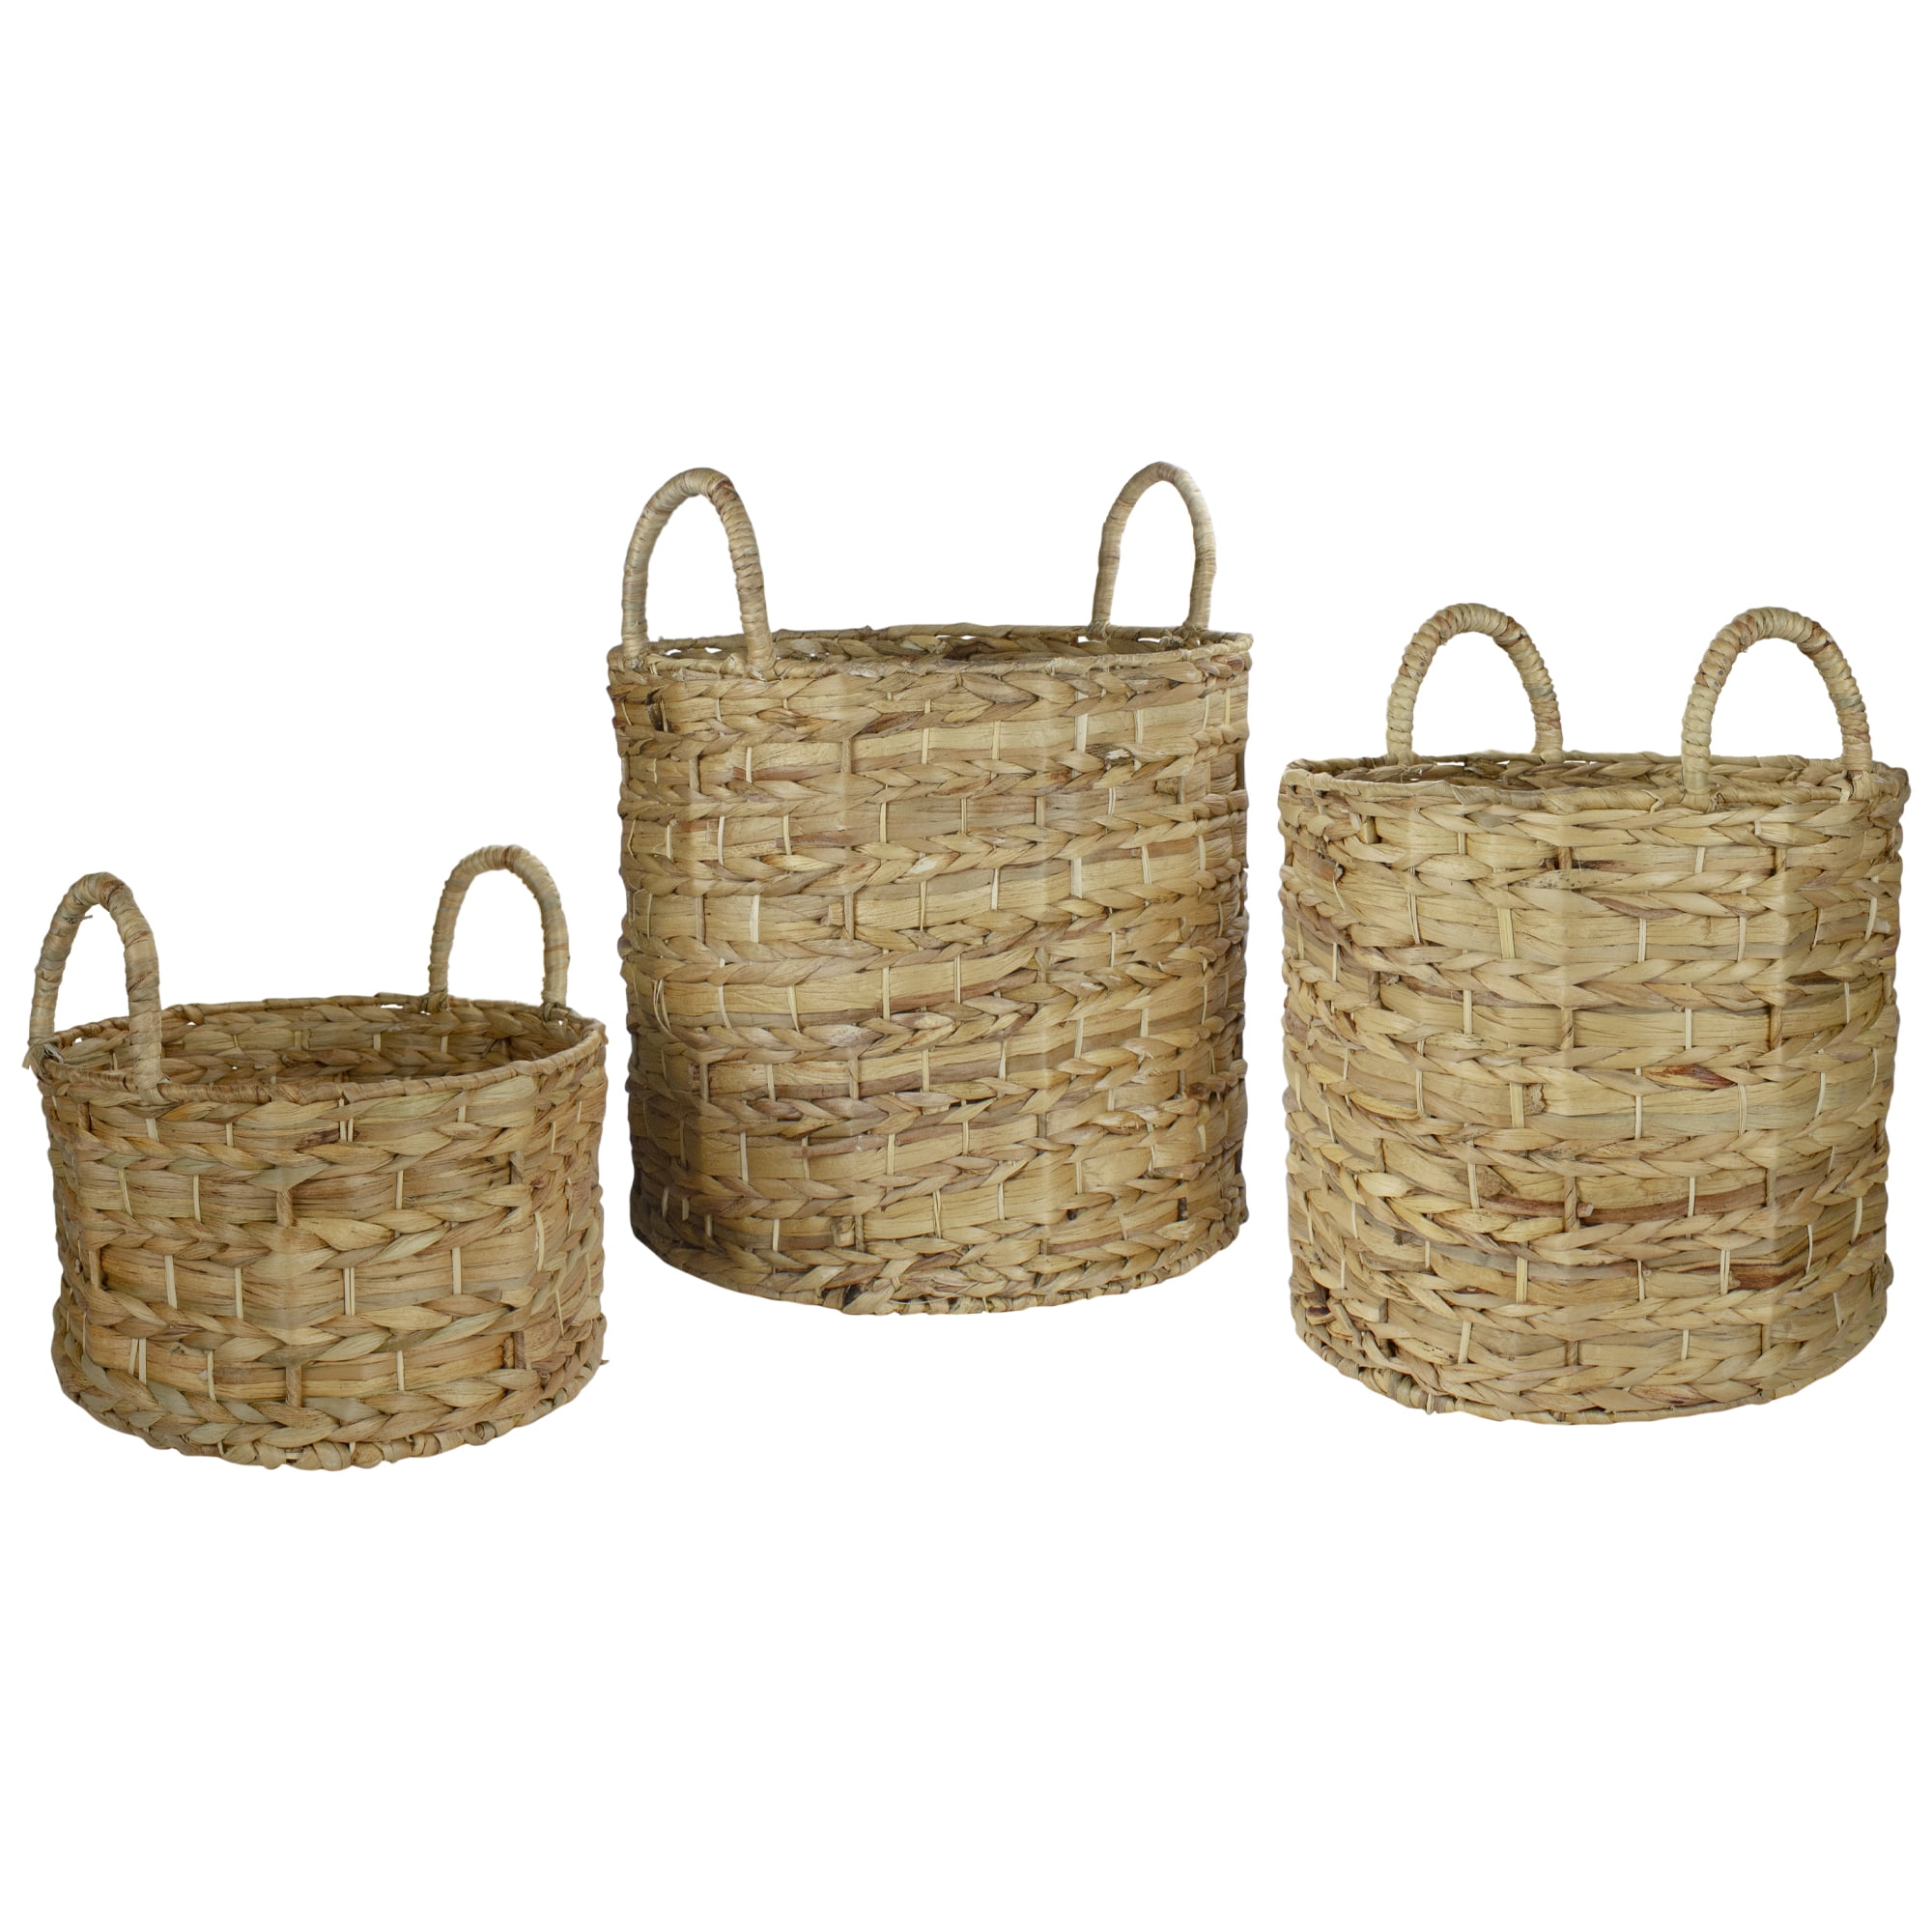 Water Hyacinth Multipurpose Storage Basket Set of 3